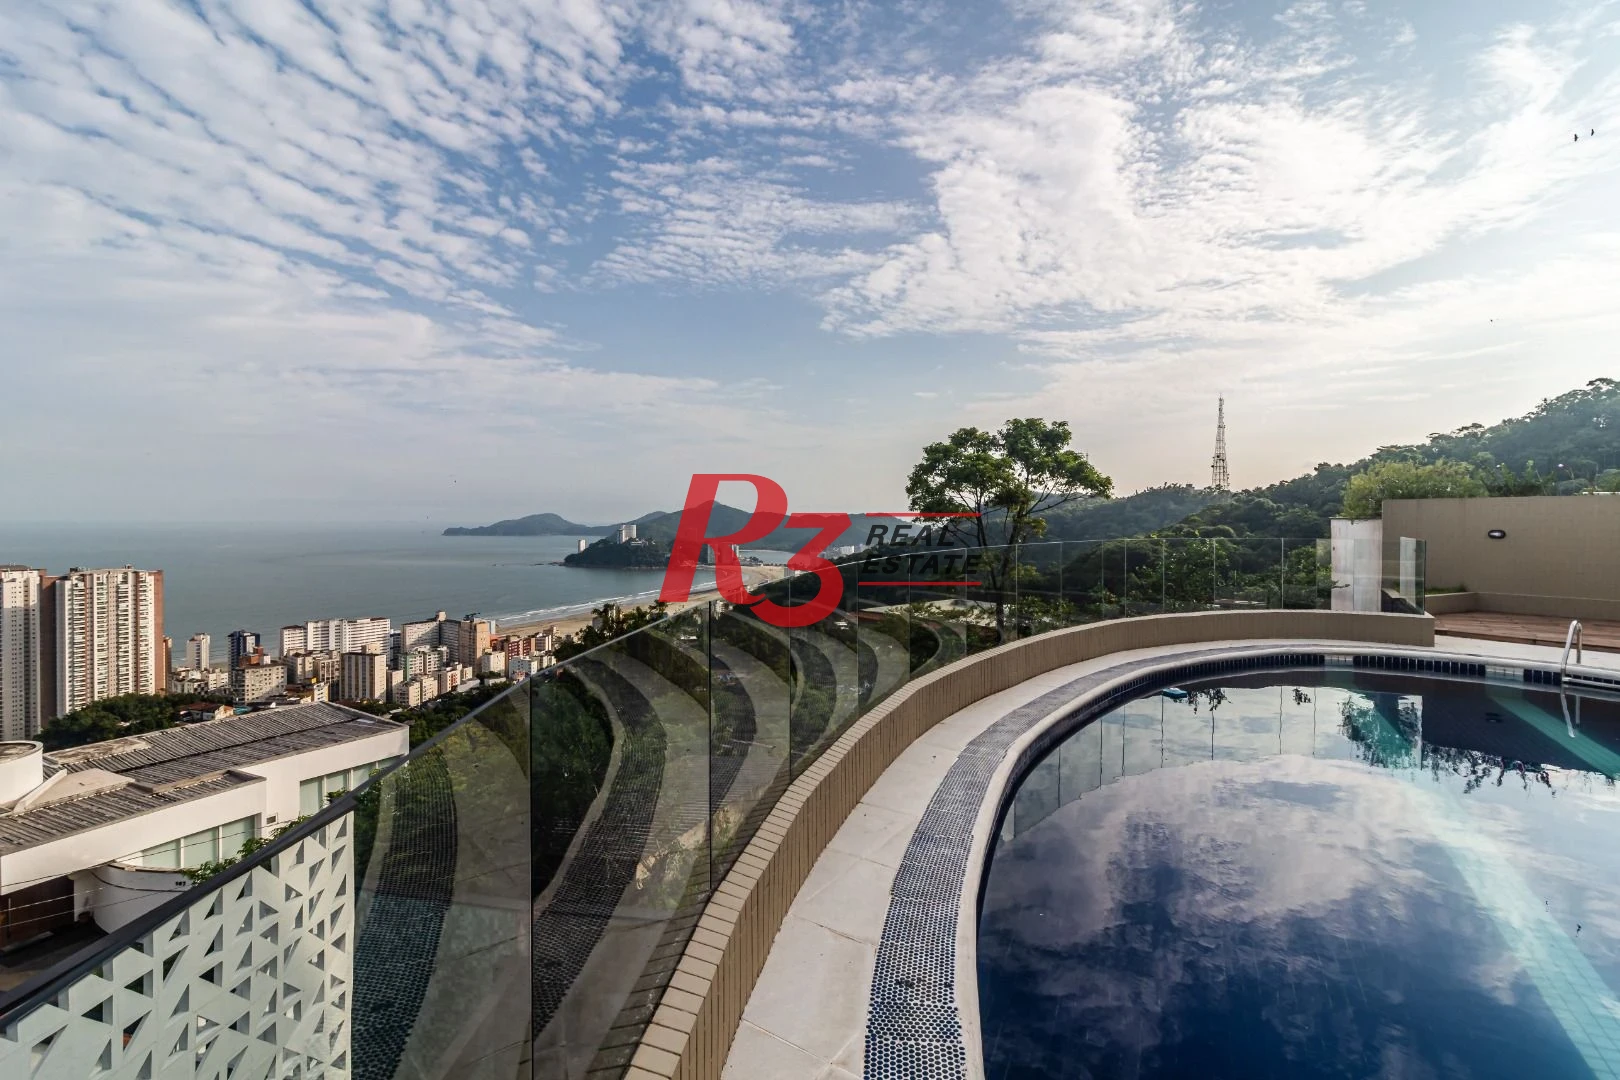 Casa com 5 dormitórios à venda, 800 m² - Morro Santa Terezinha - Santos/SP